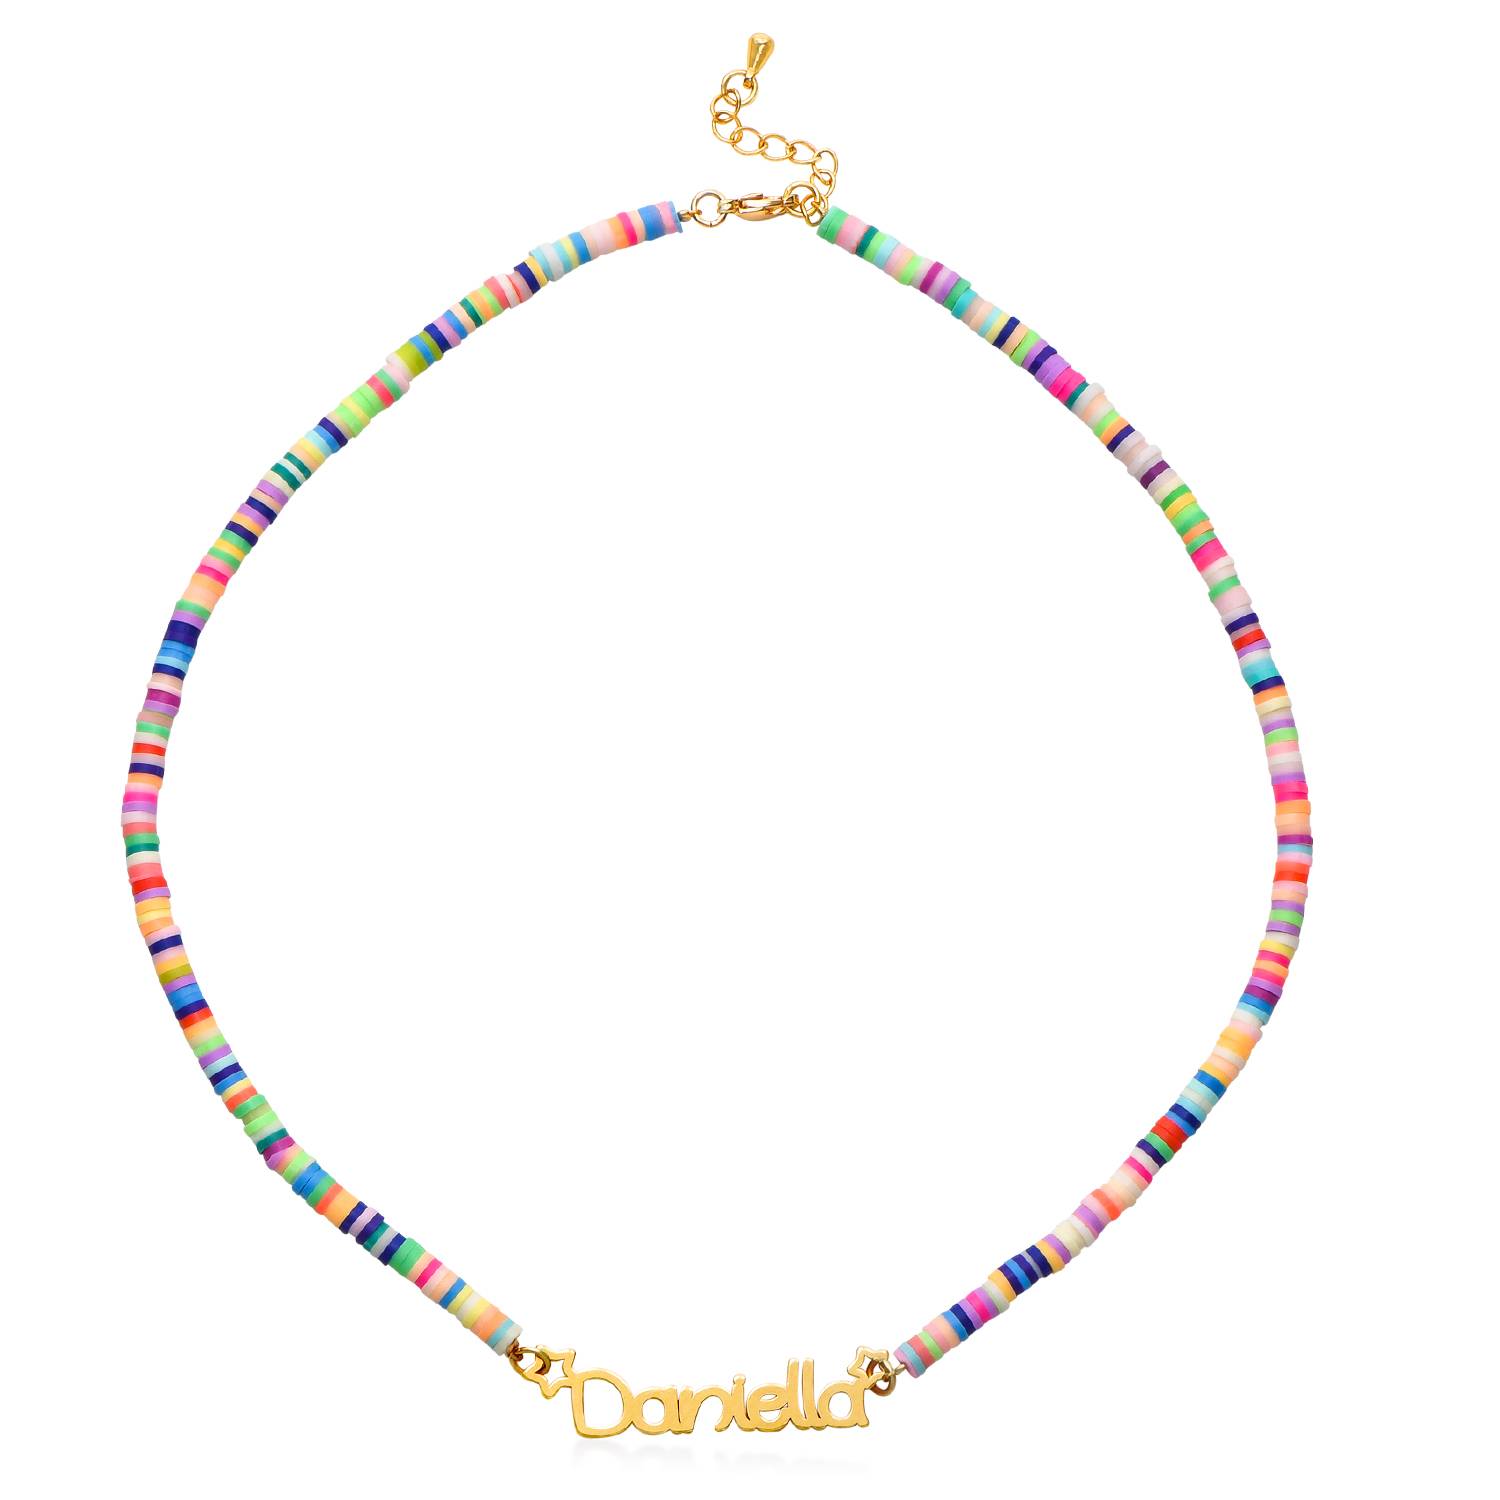 Regnbue halskæde til piger med navn i guld vermeil-2 produkt billede